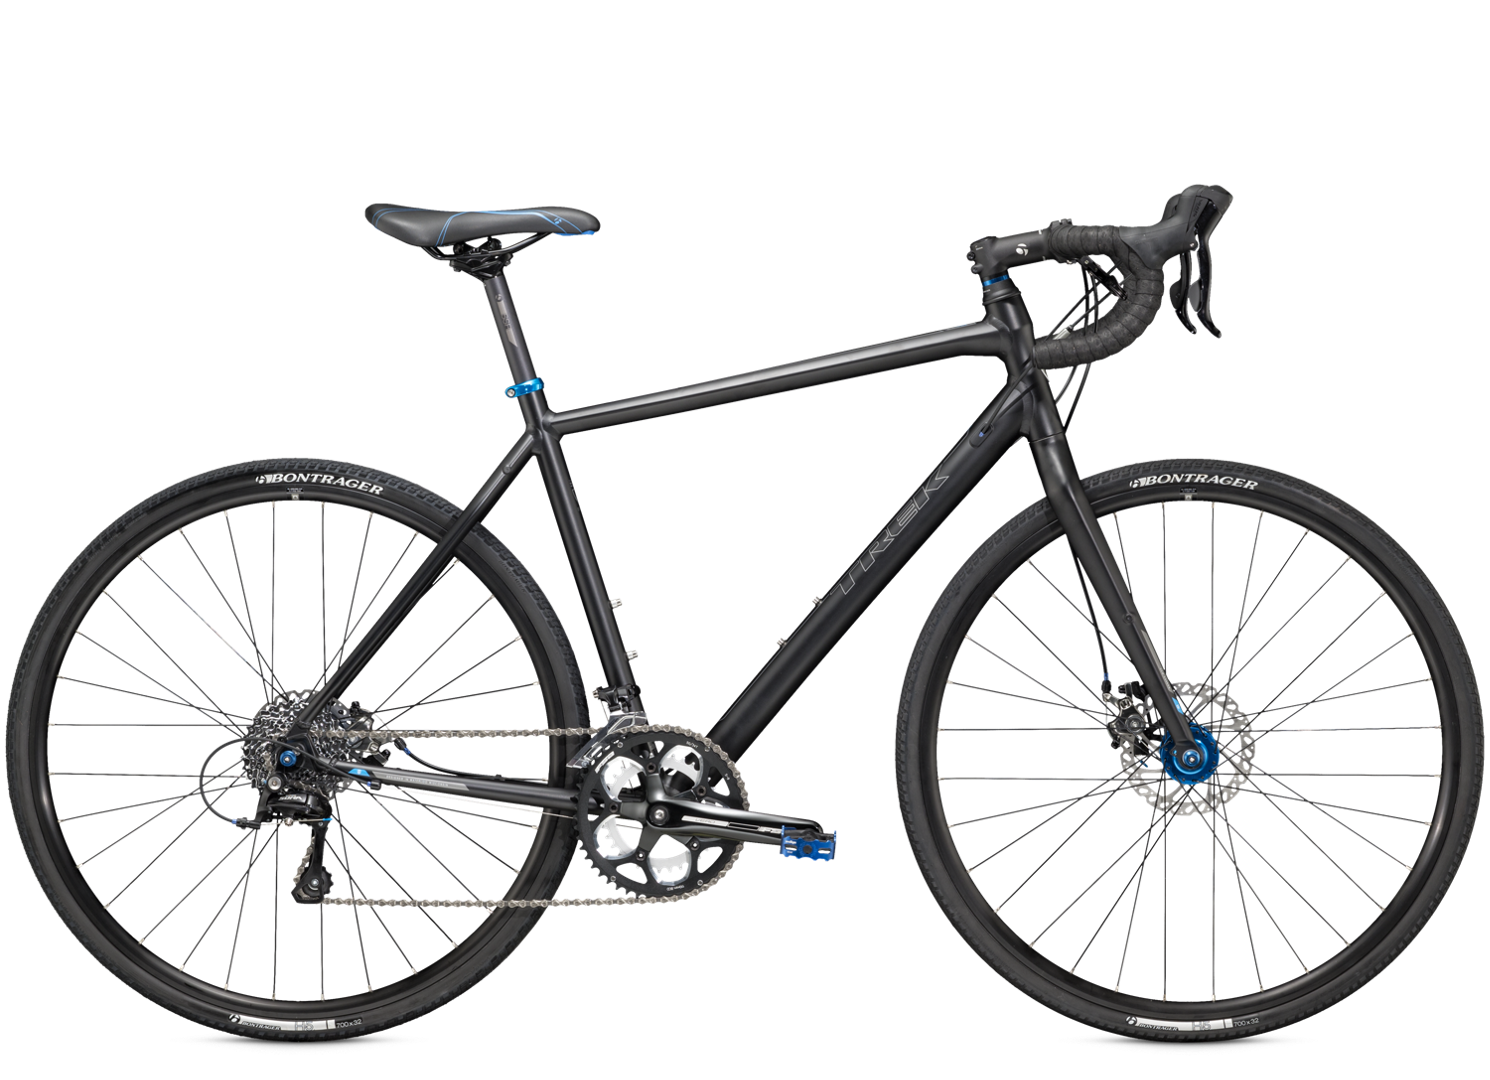 2016 CrossRip Elite - Bike Archive - Trek Bicycle